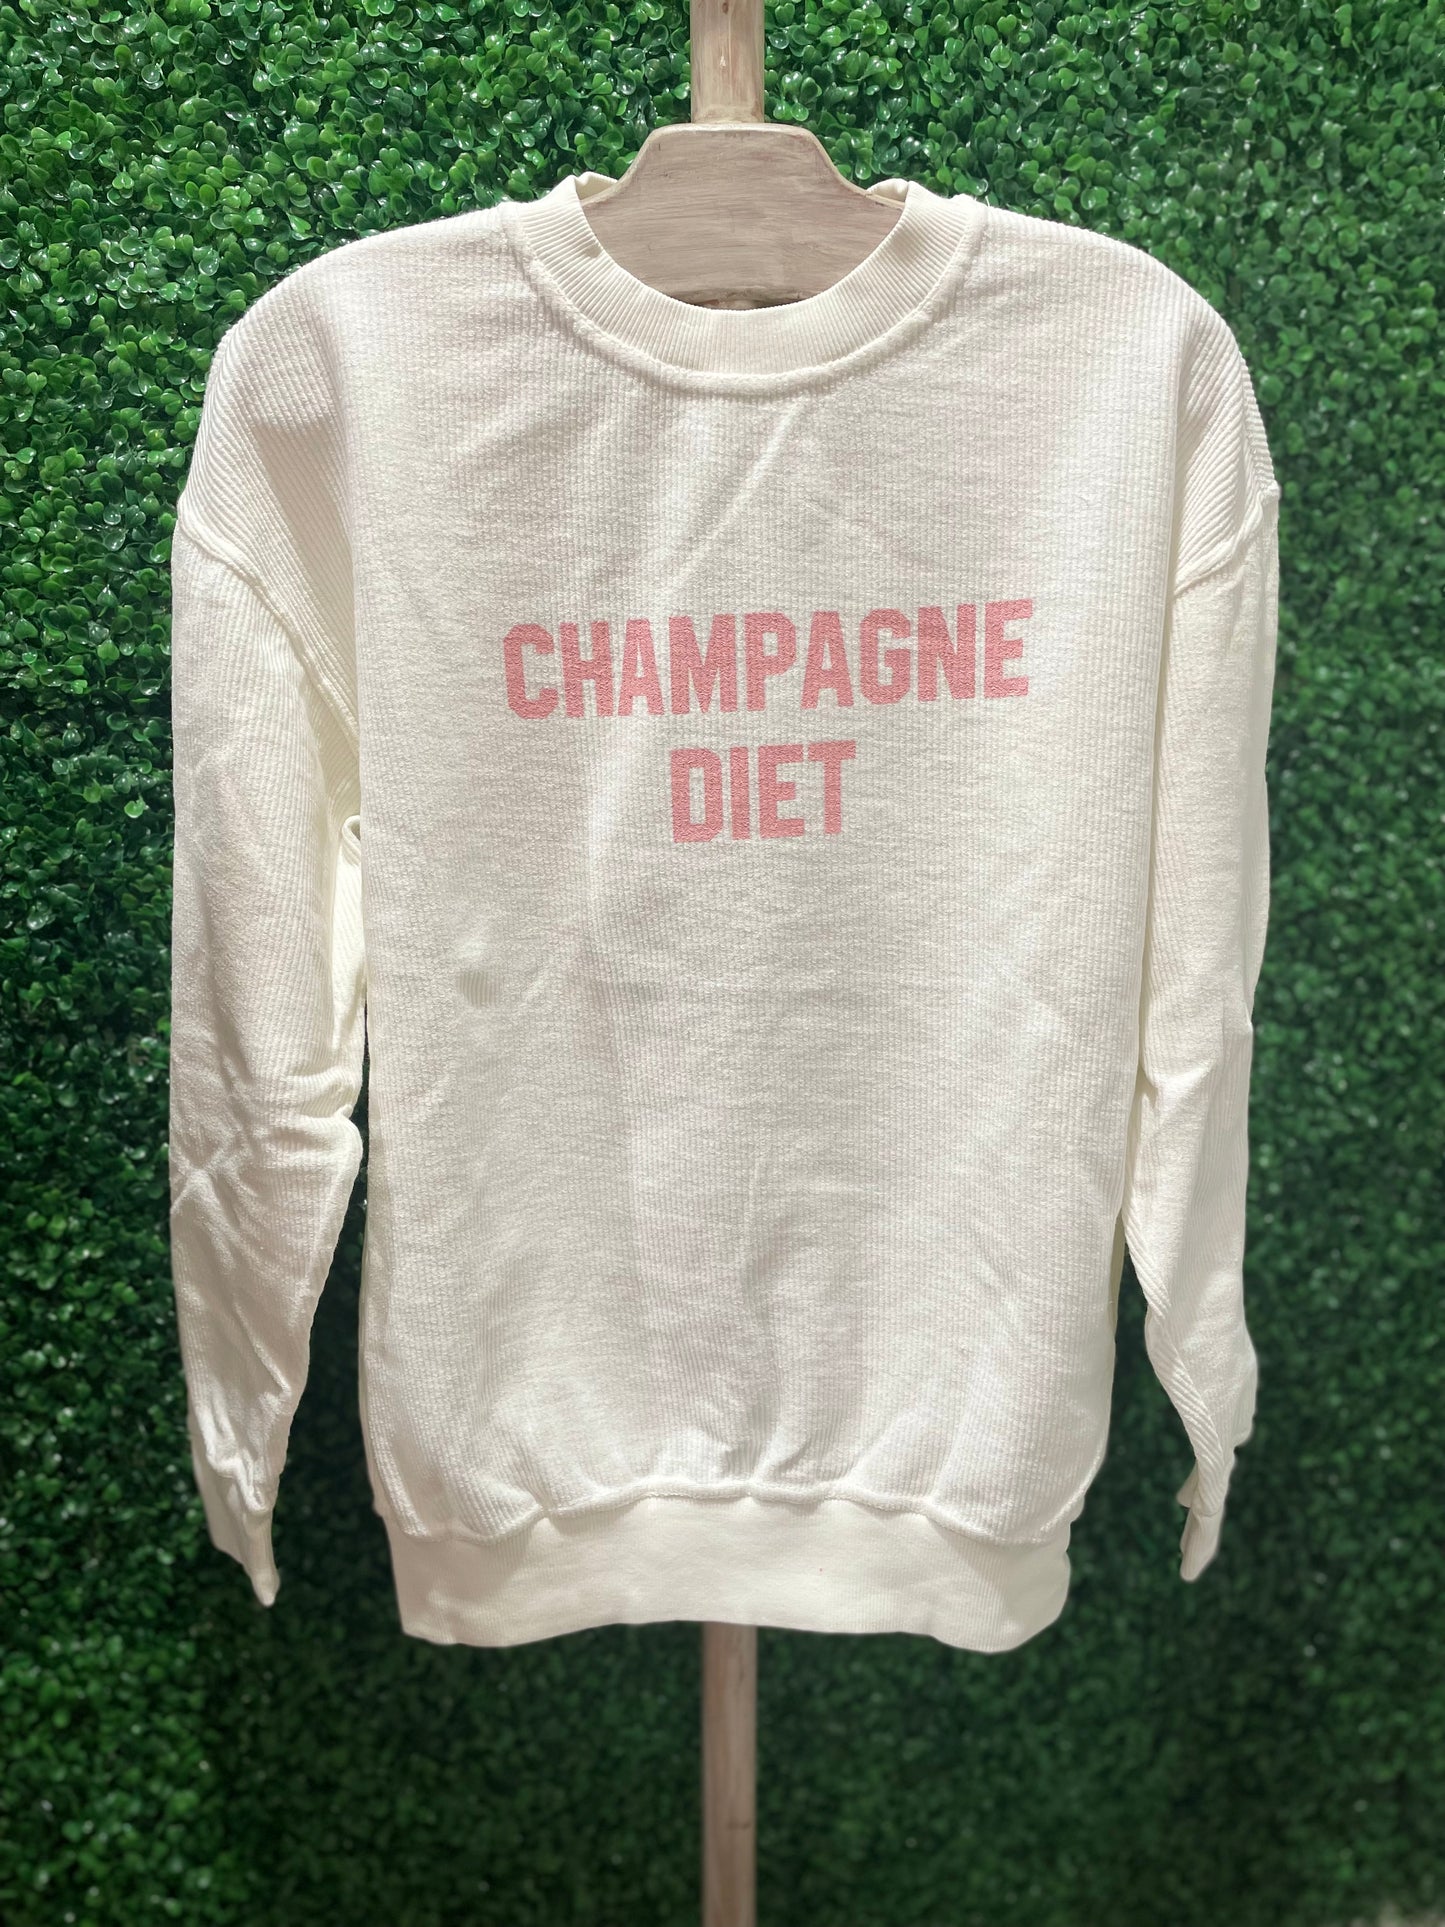 Champagne Diet Sweatshirt